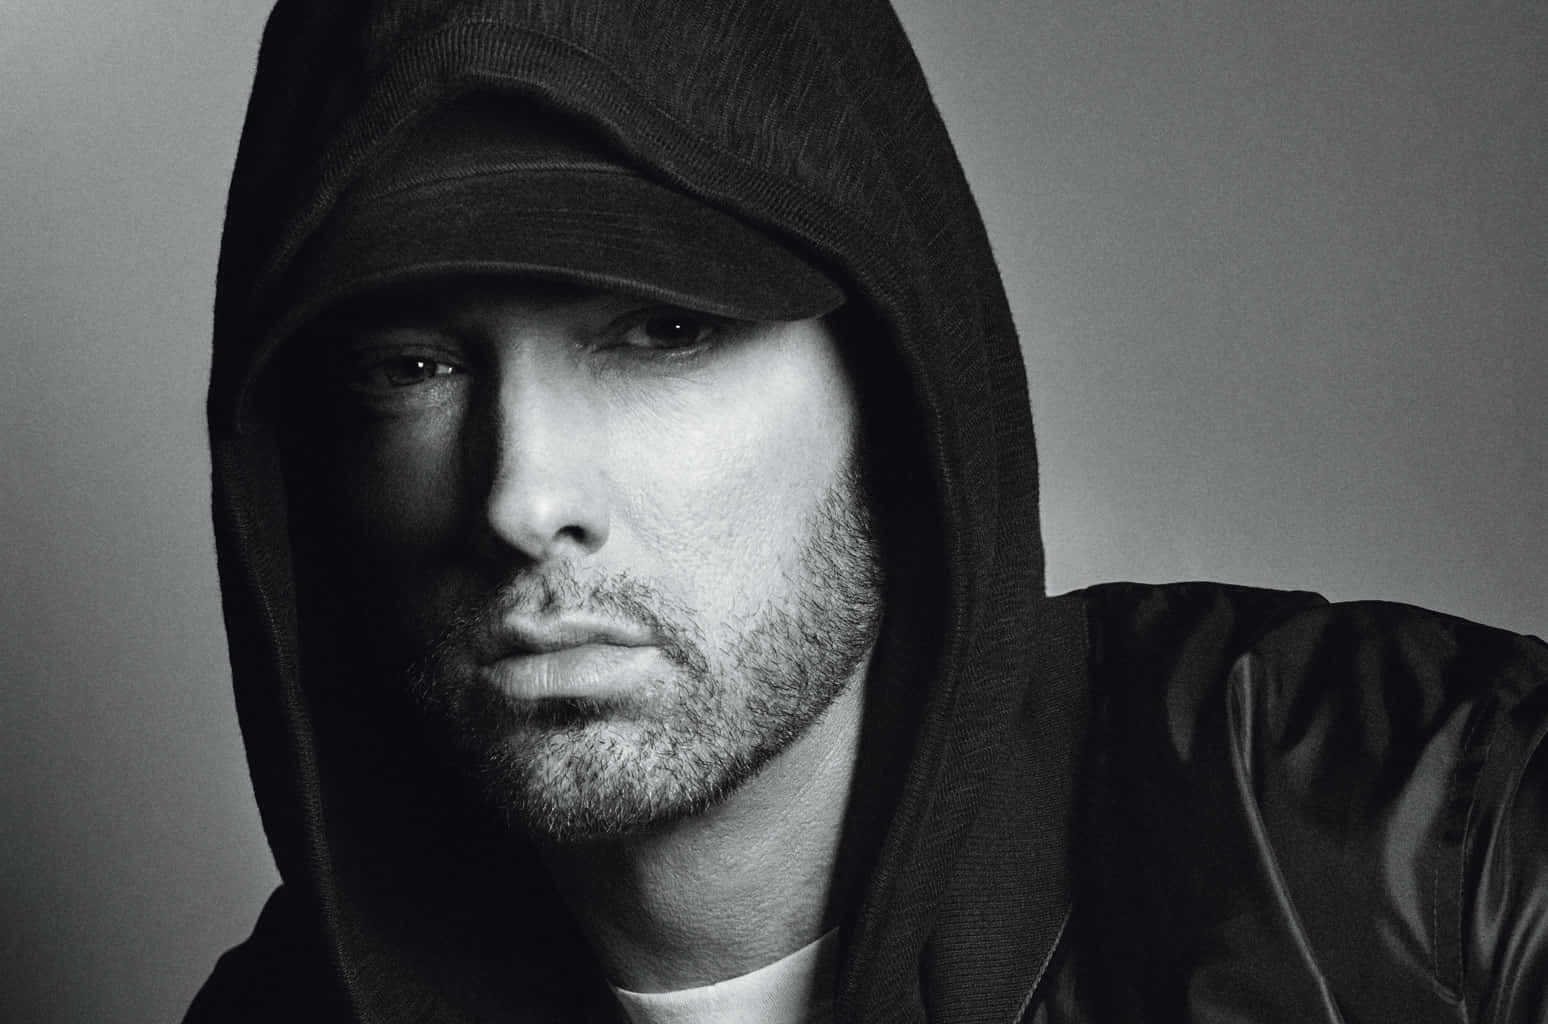 Eminemtritt Auf Der Bühne Auf.